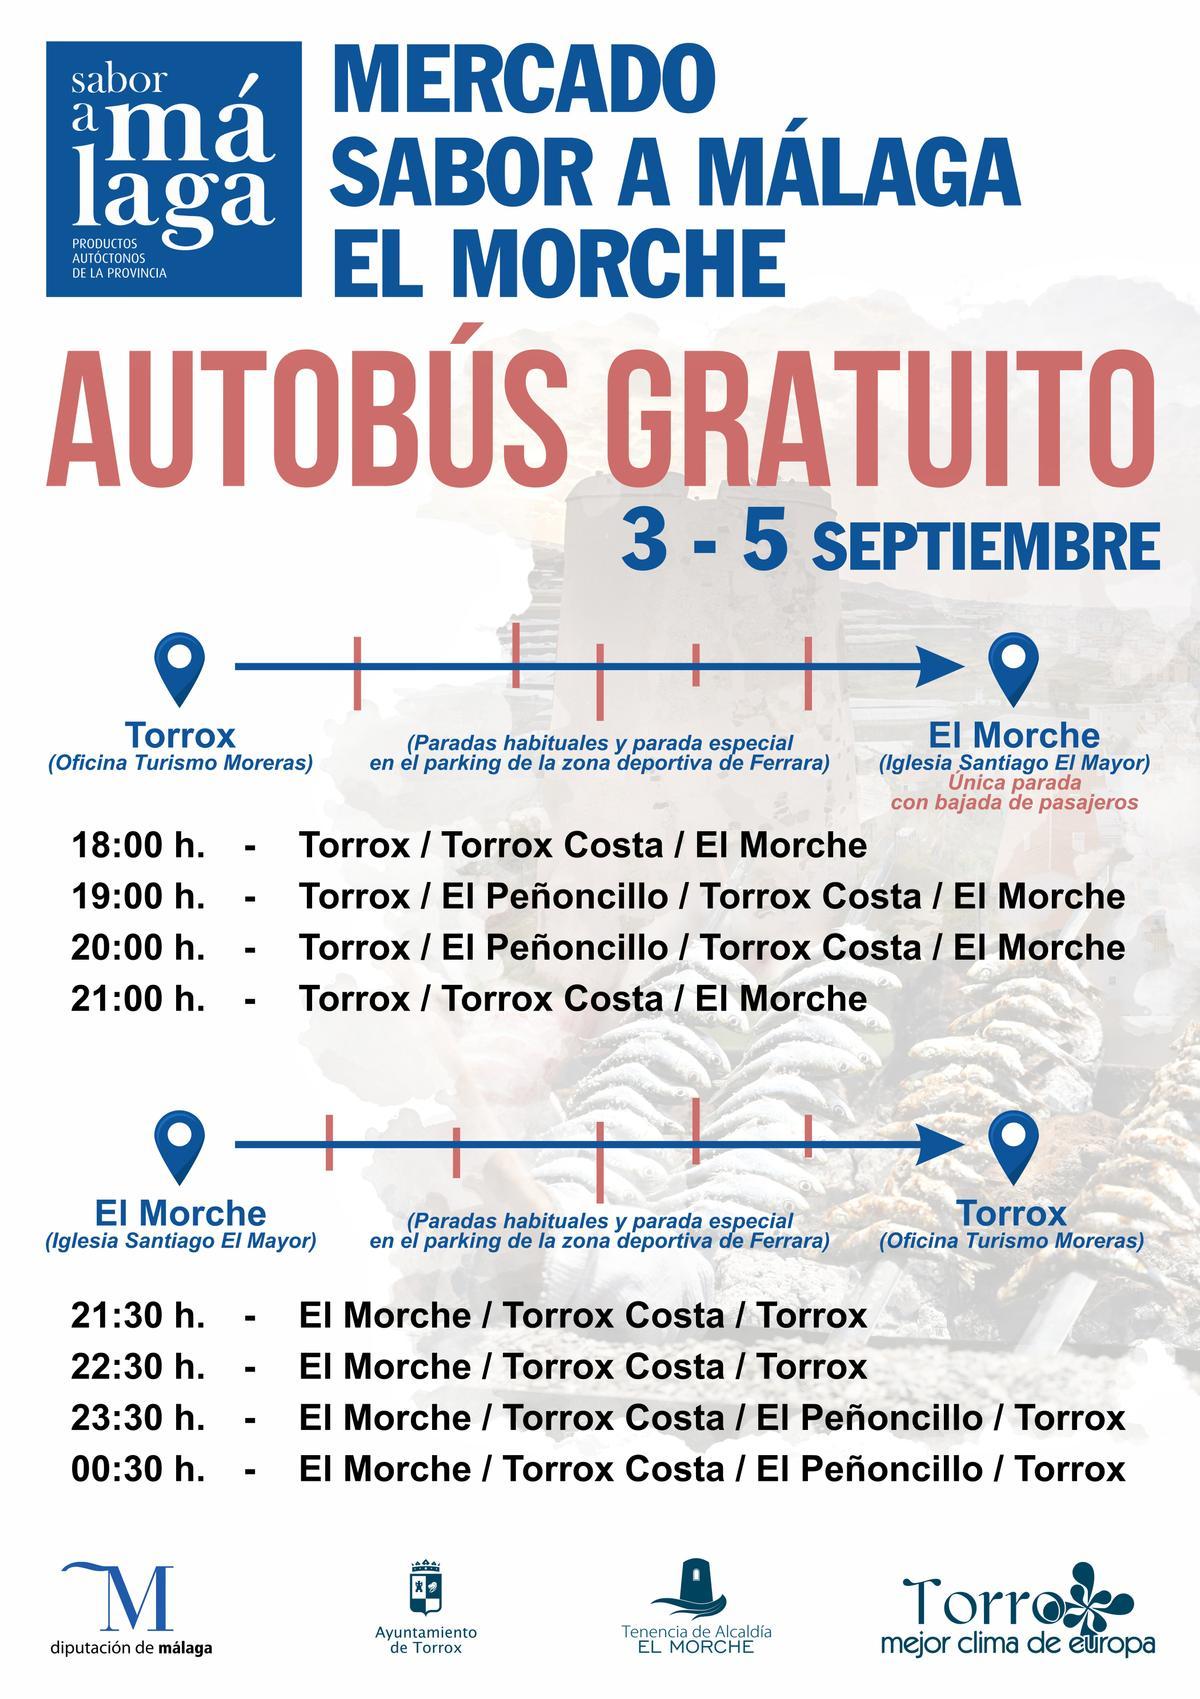 Horarios de los autobuses gratuitos para el mercado Sabor a Málaga de El Morche.